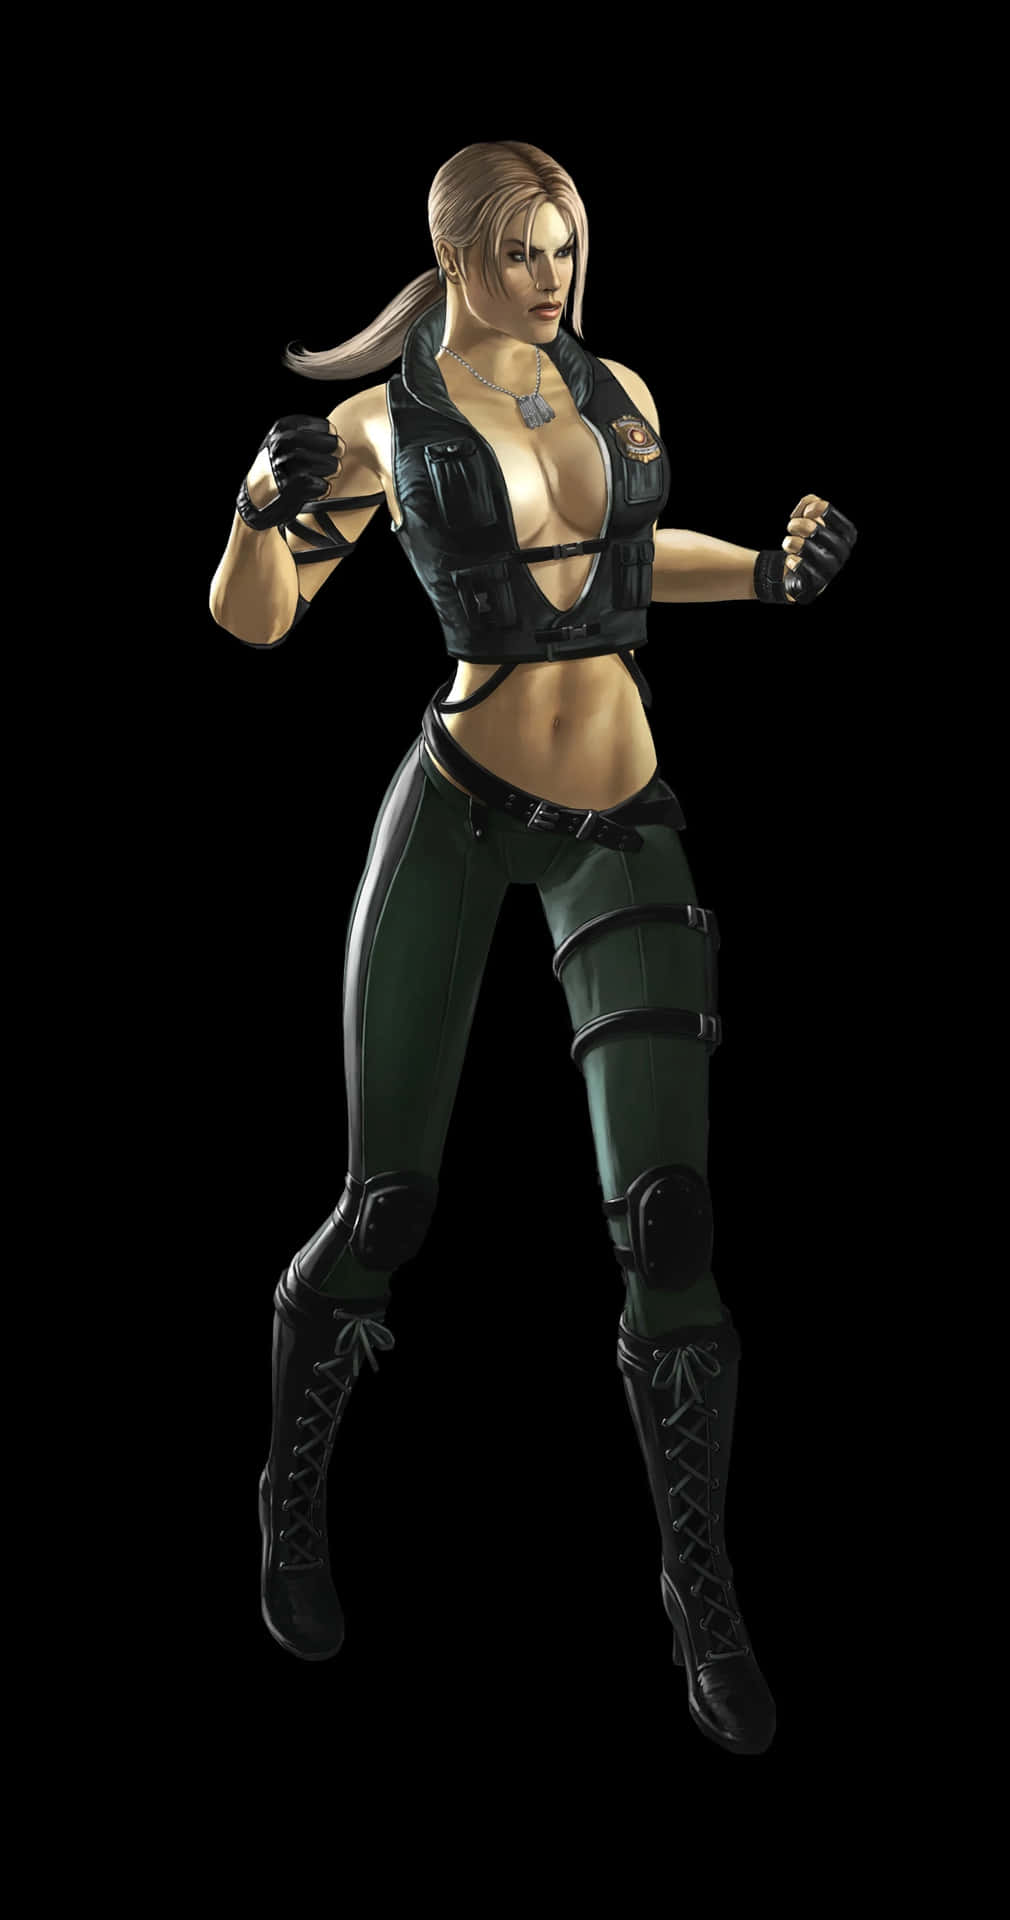 Mortal Kombat Warrior - Sonya Blade in Action Wallpaper